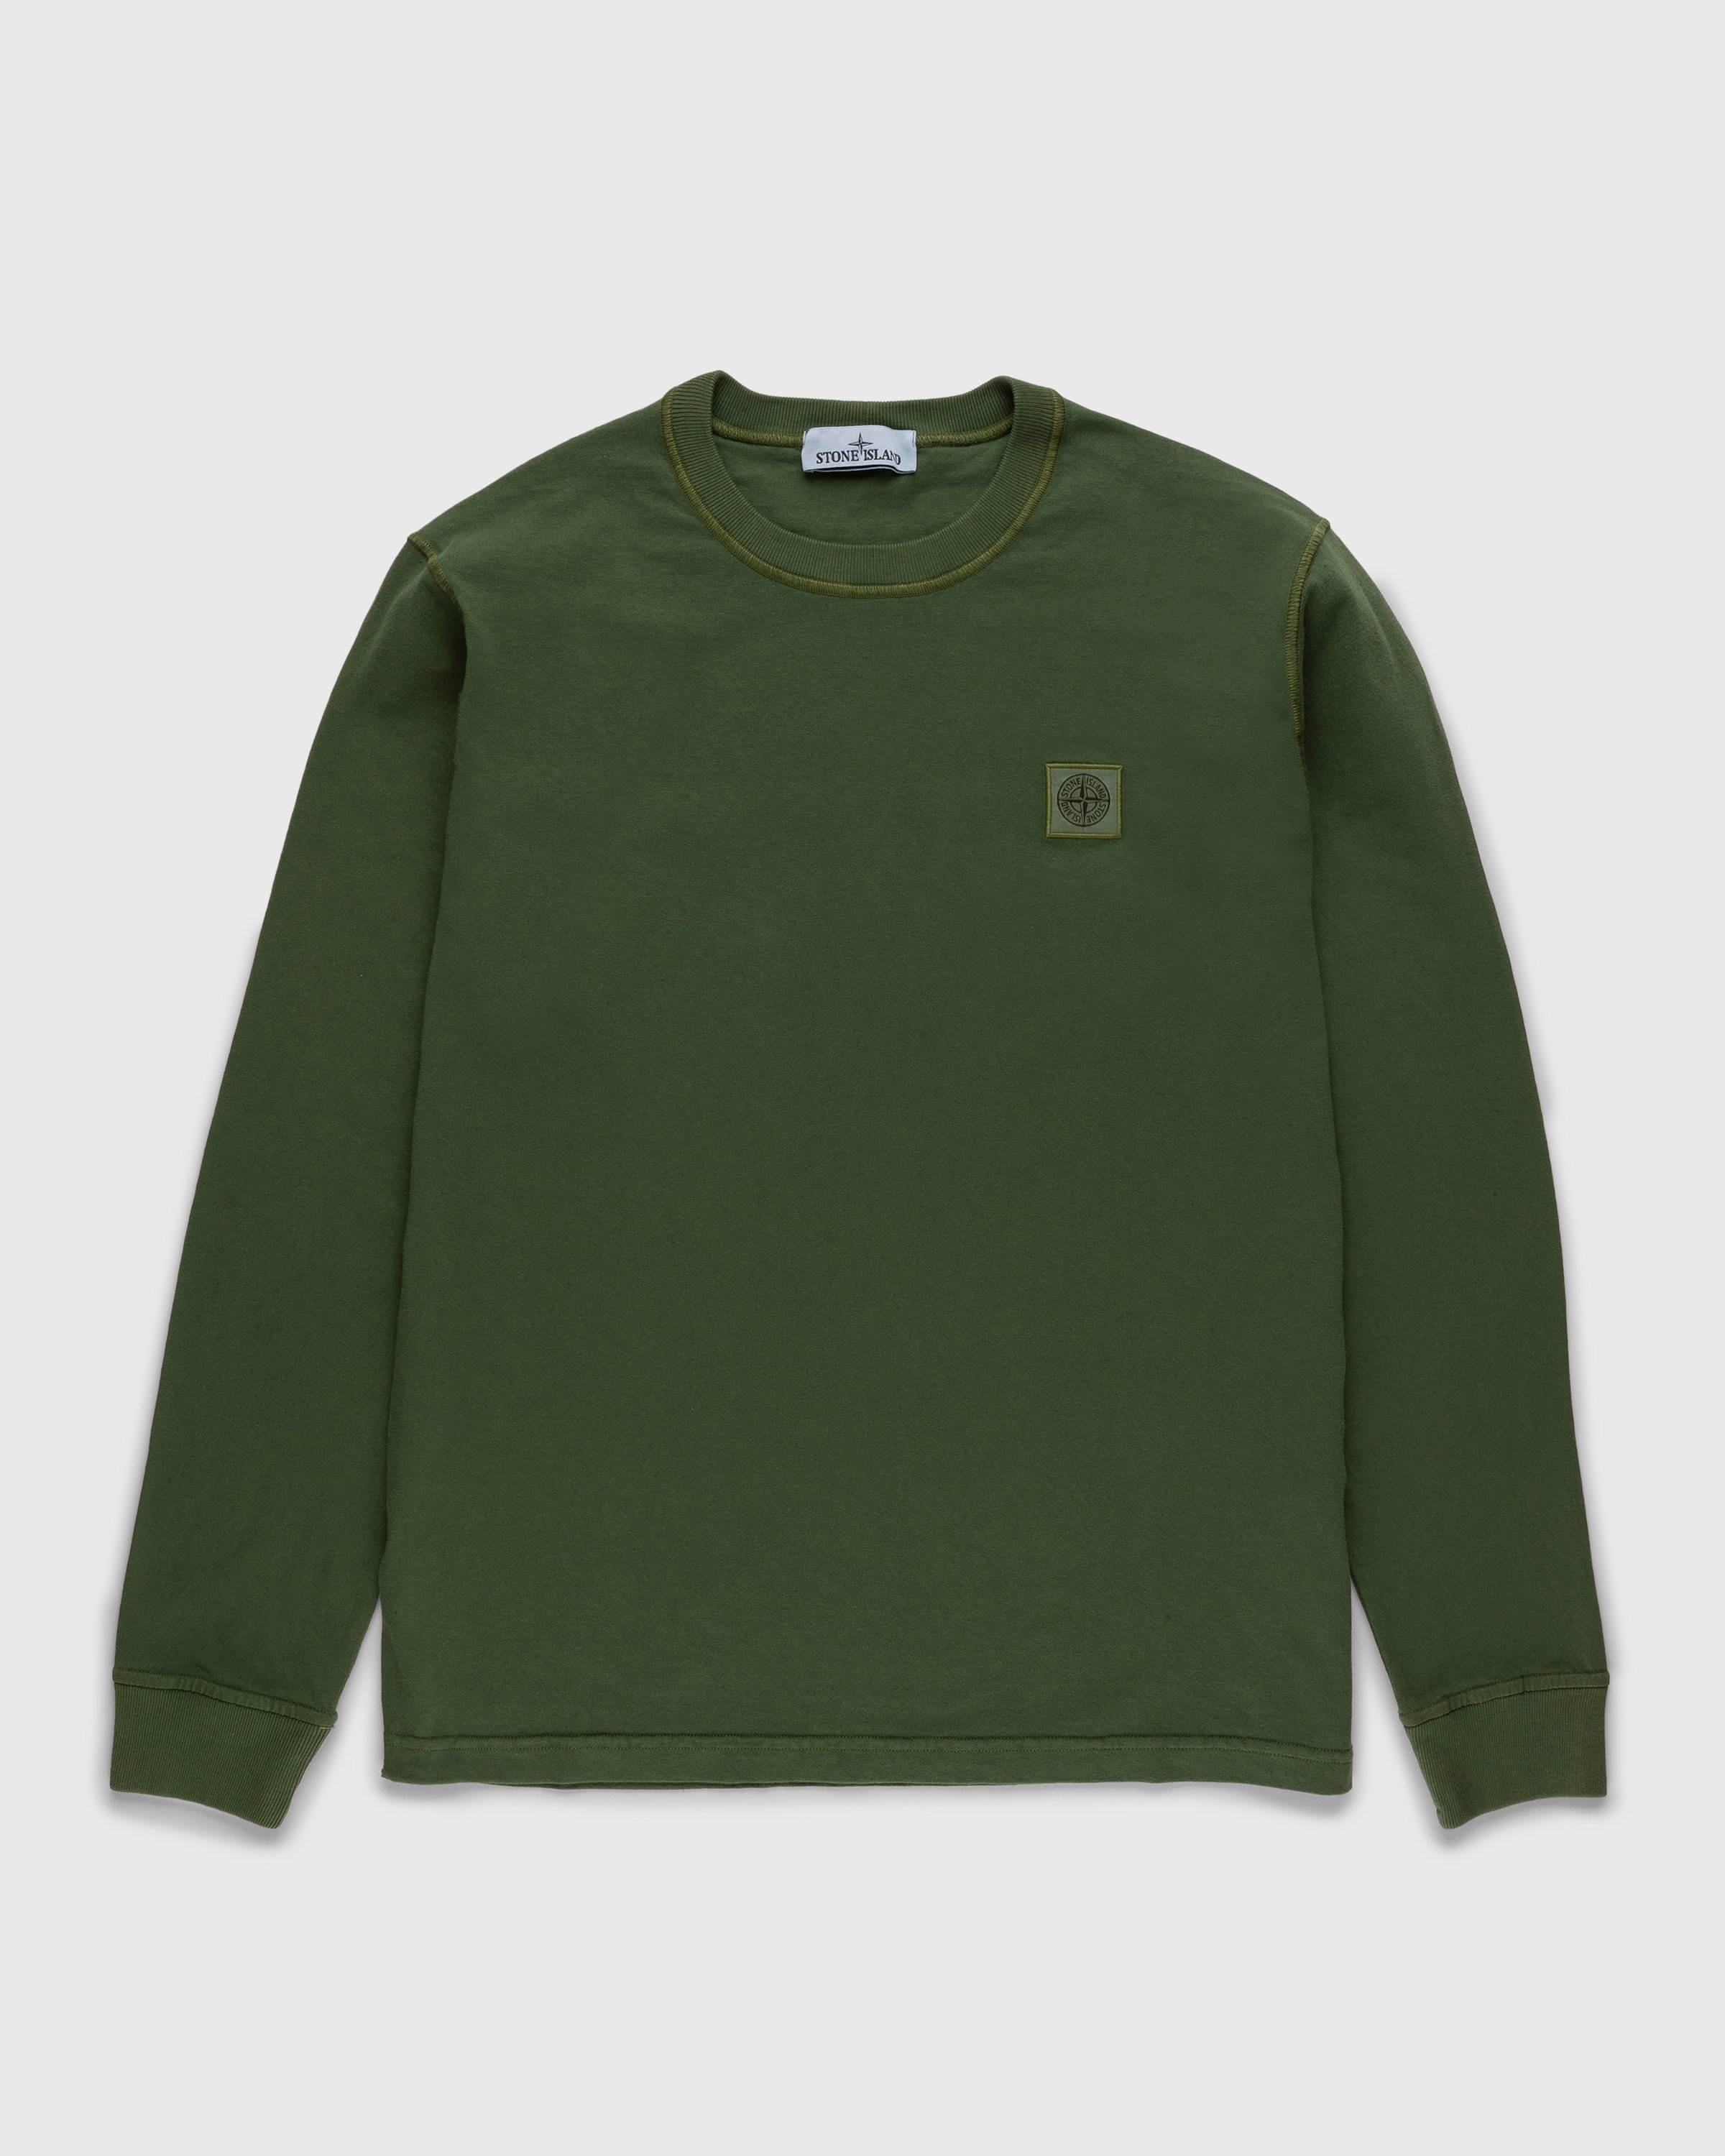 Stone Island - Fissato Longsleeve T-Shirt Olive - Clothing - Green - Image 1